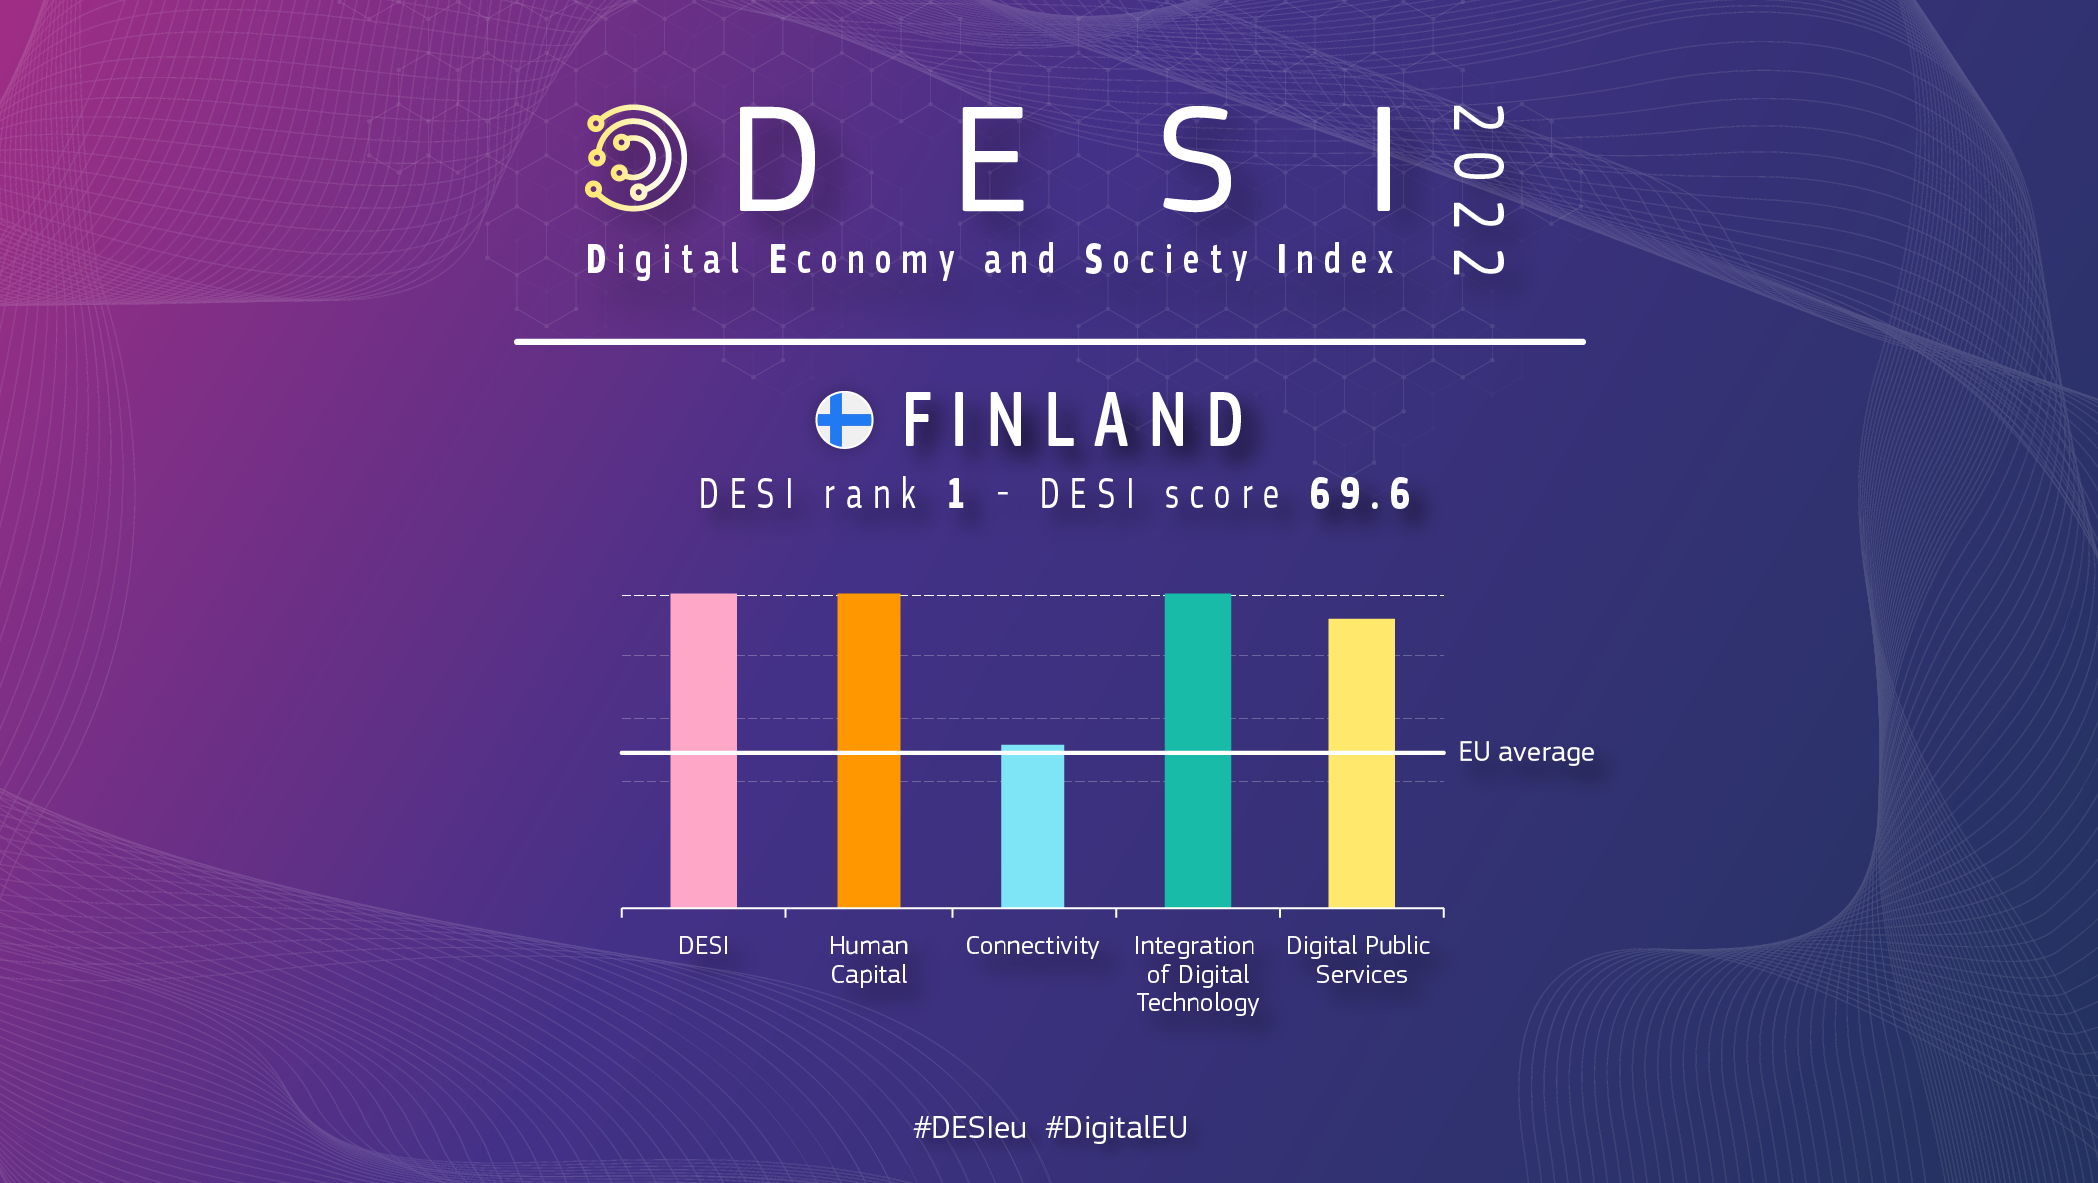 Grafisk översikt över Finland i DESI med en rangordning på 1 och 69,6 poäng